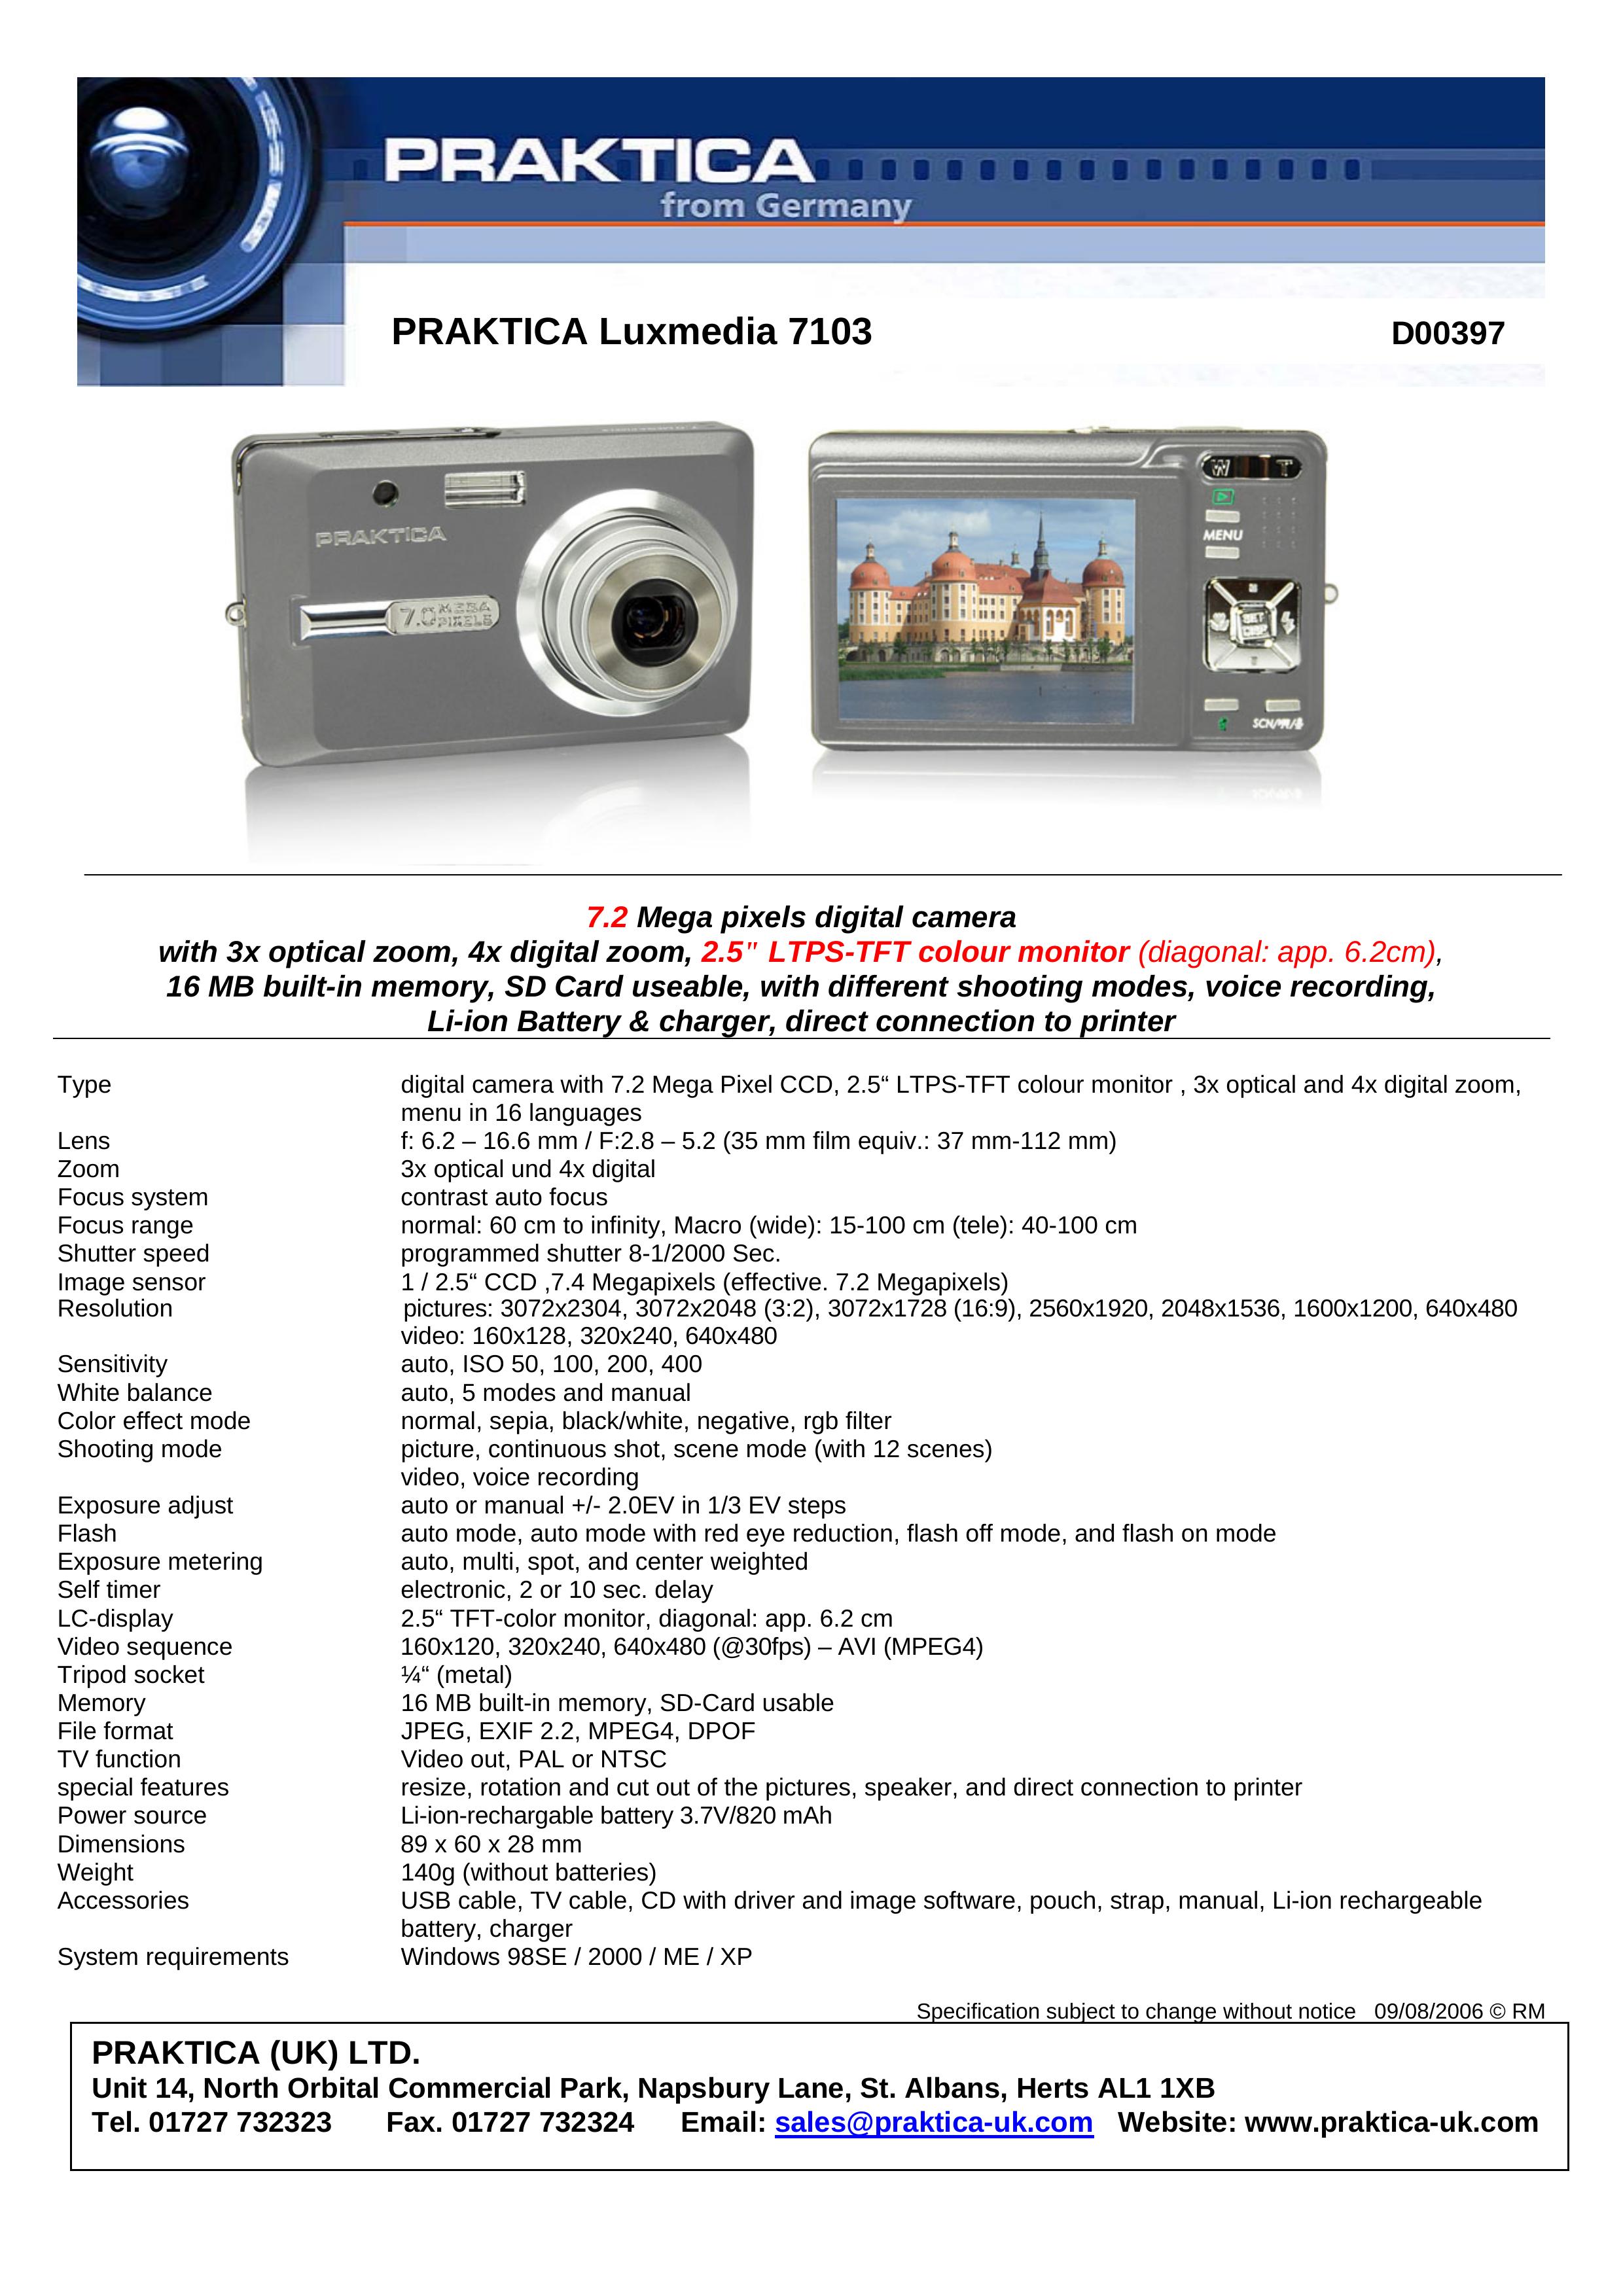 Praktica D00397 Digital Camera User Manual